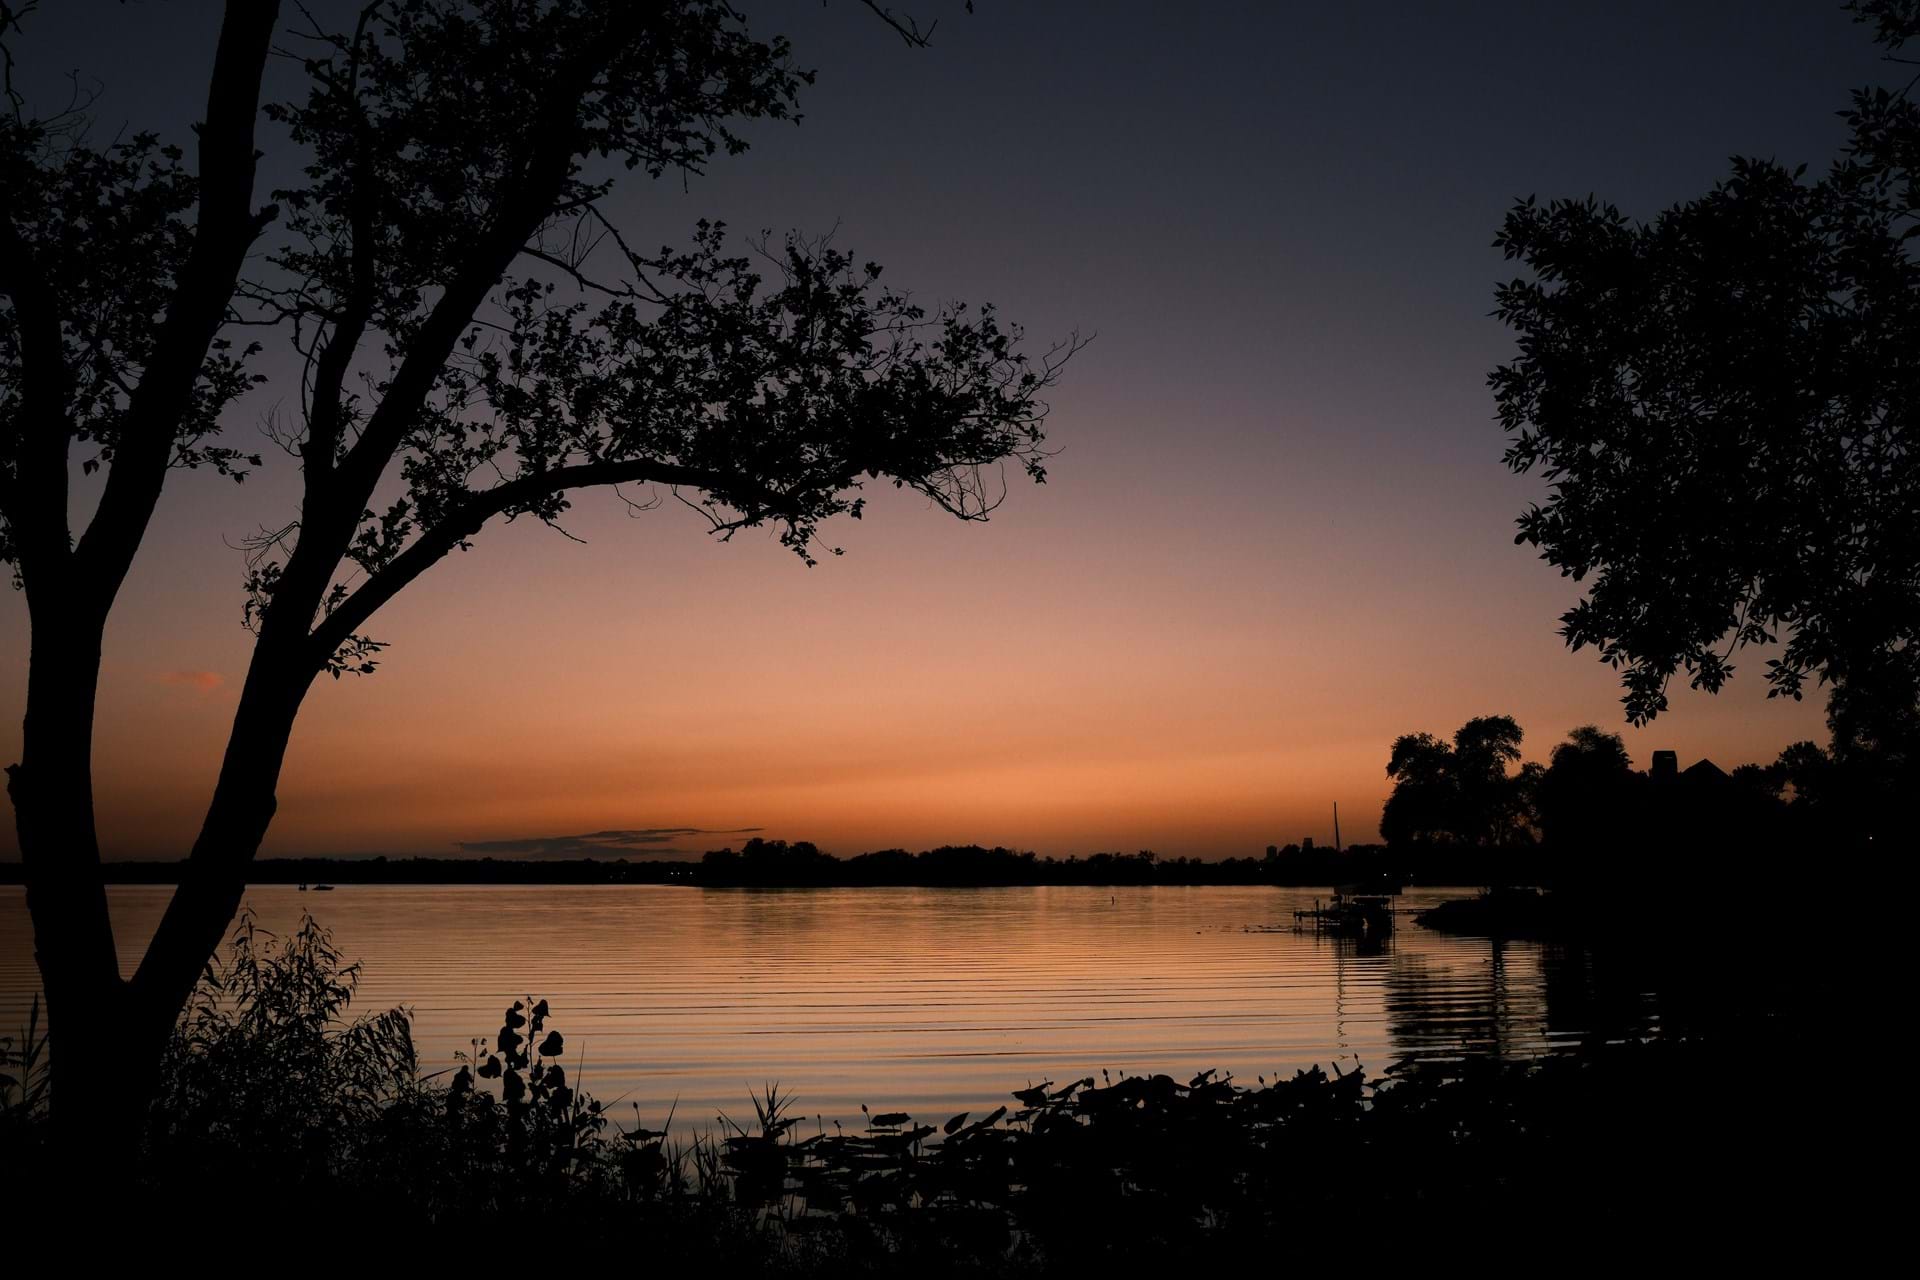 Lake Manawa at sunset.